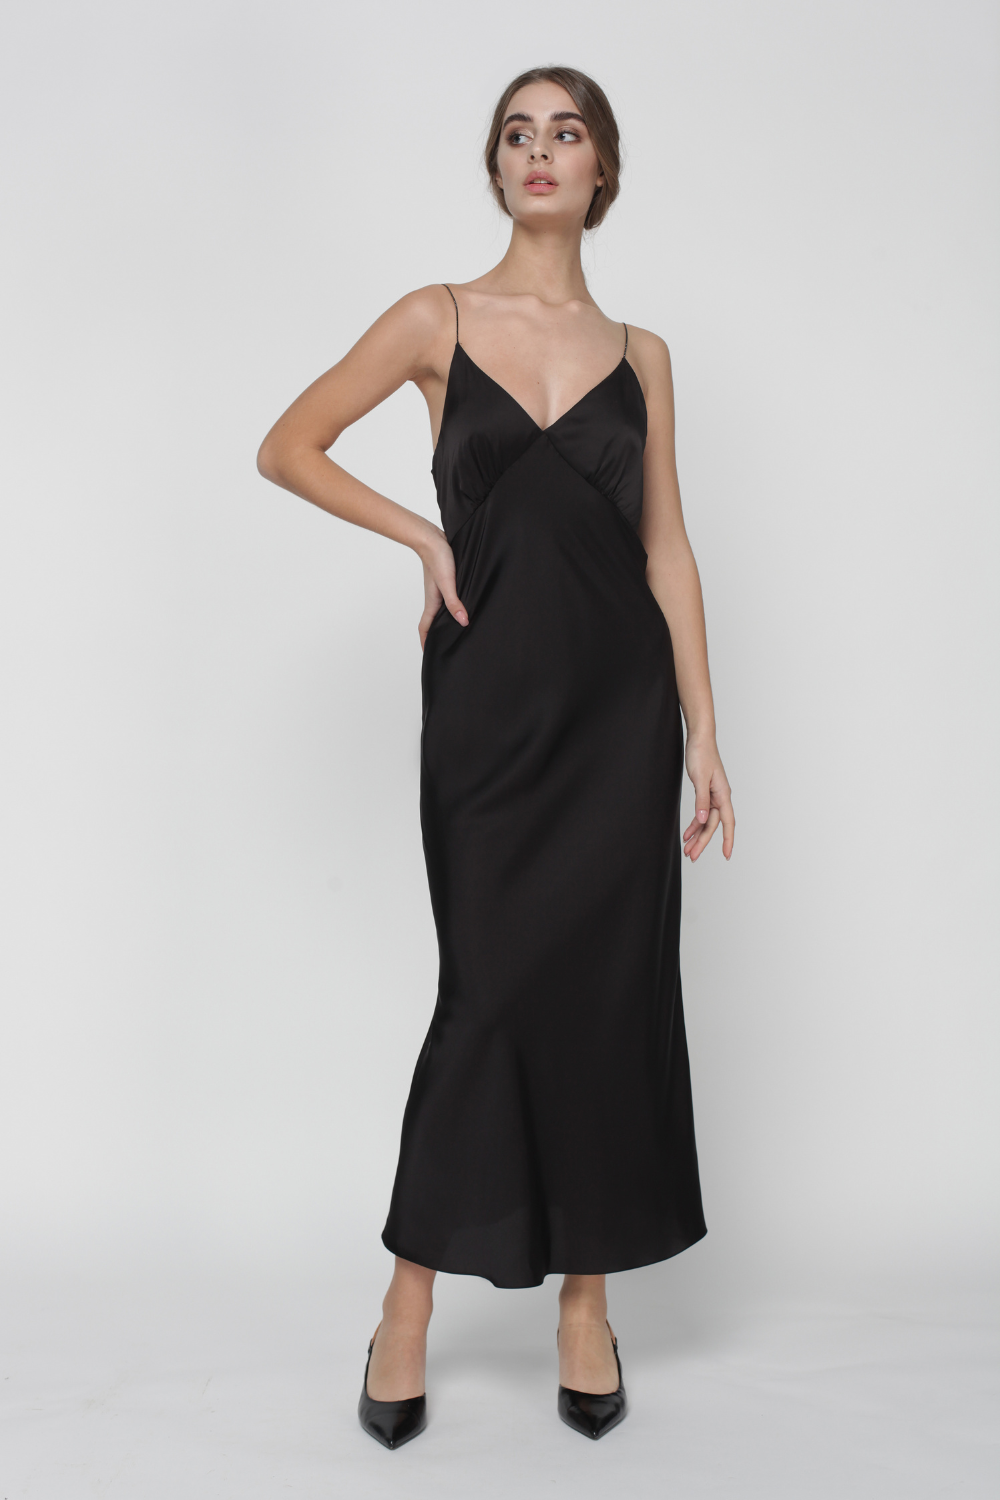 Сукня комбінована з чашкою на тонких бретелях зі стразами, чорна (MissSecret) DR-017-black